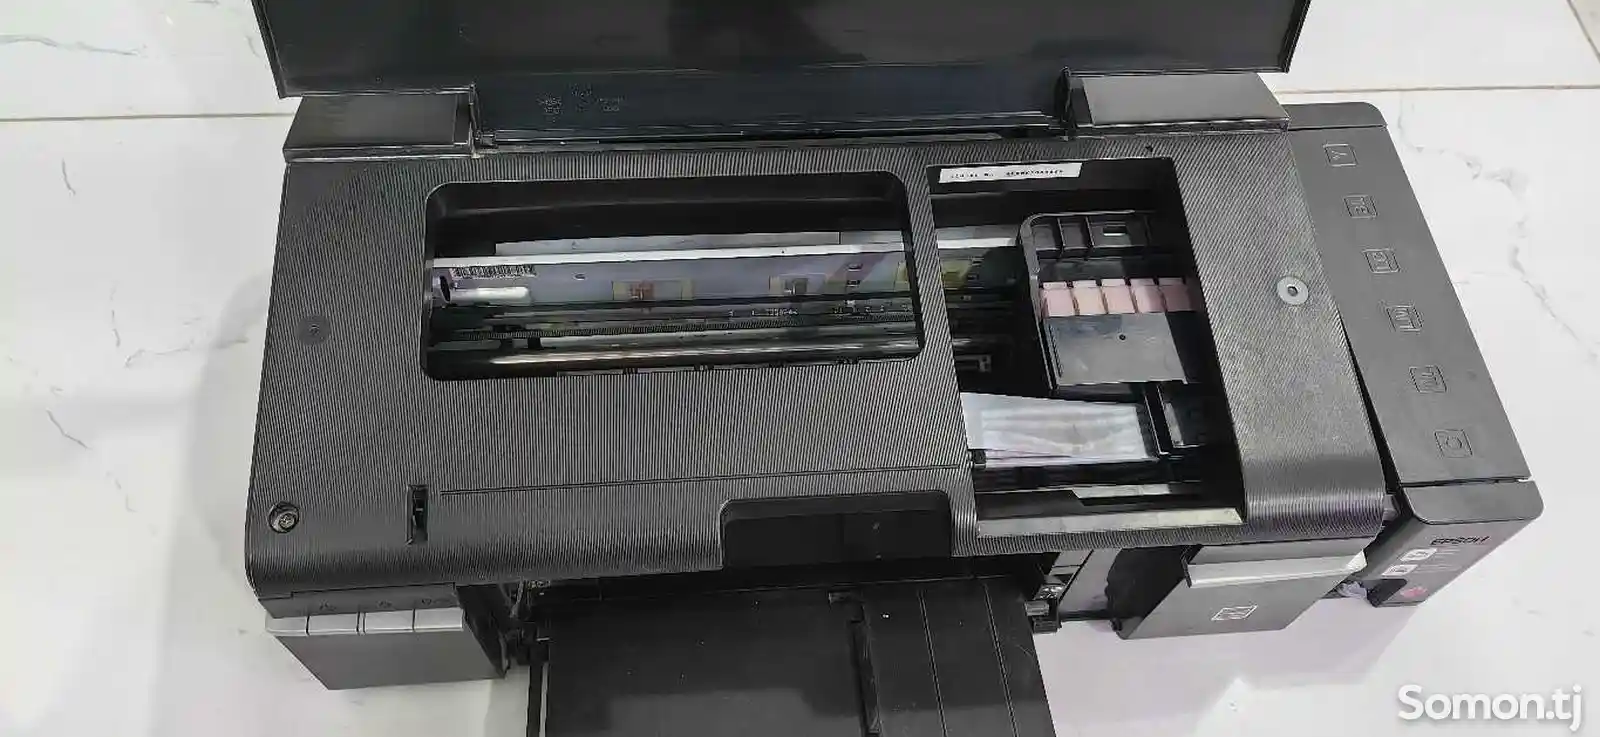 Принтер epson l800-5